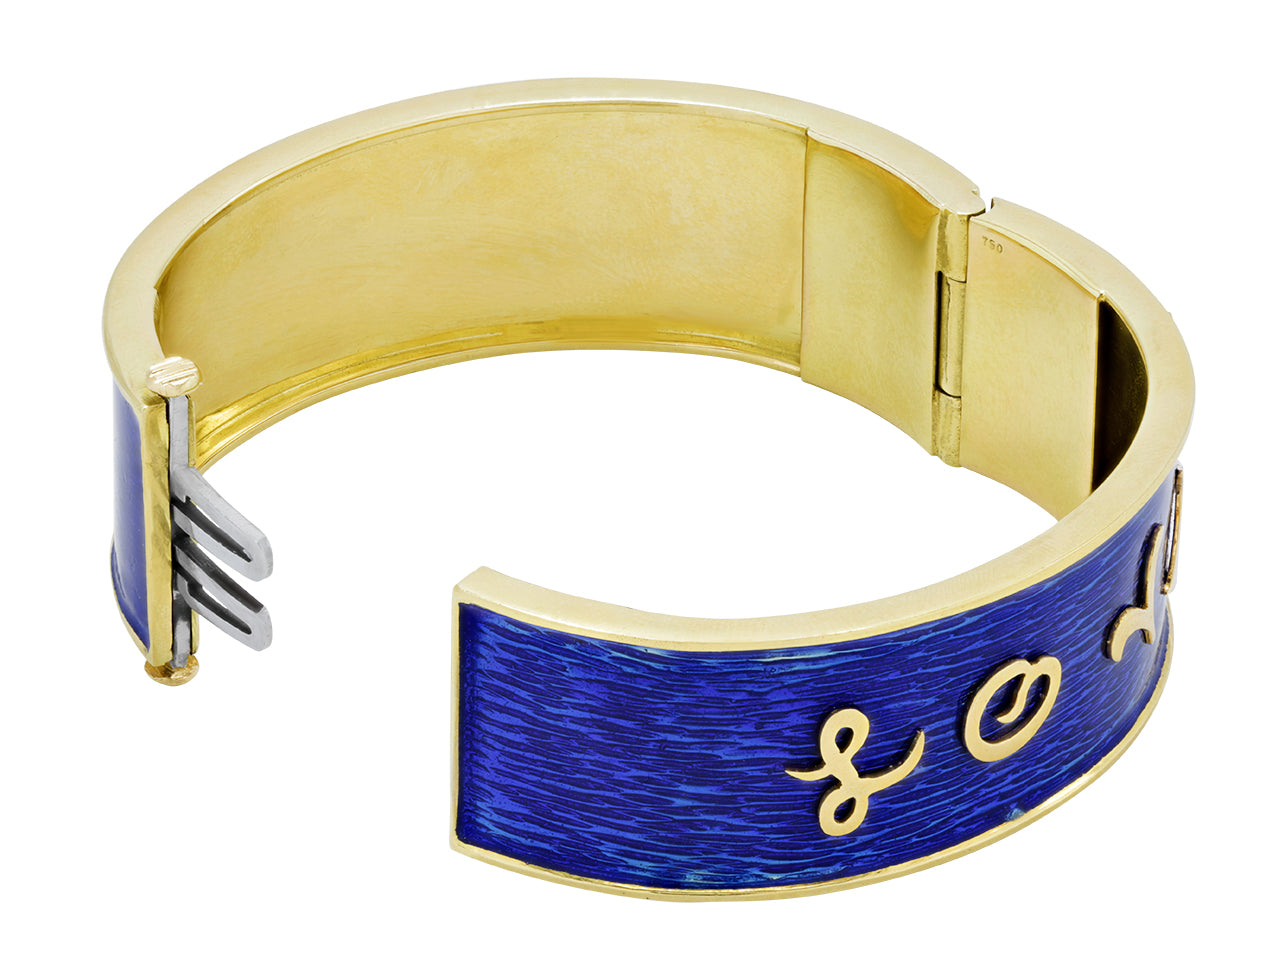 'Love' Bangle Bracelet in Enamel and 18K Gold